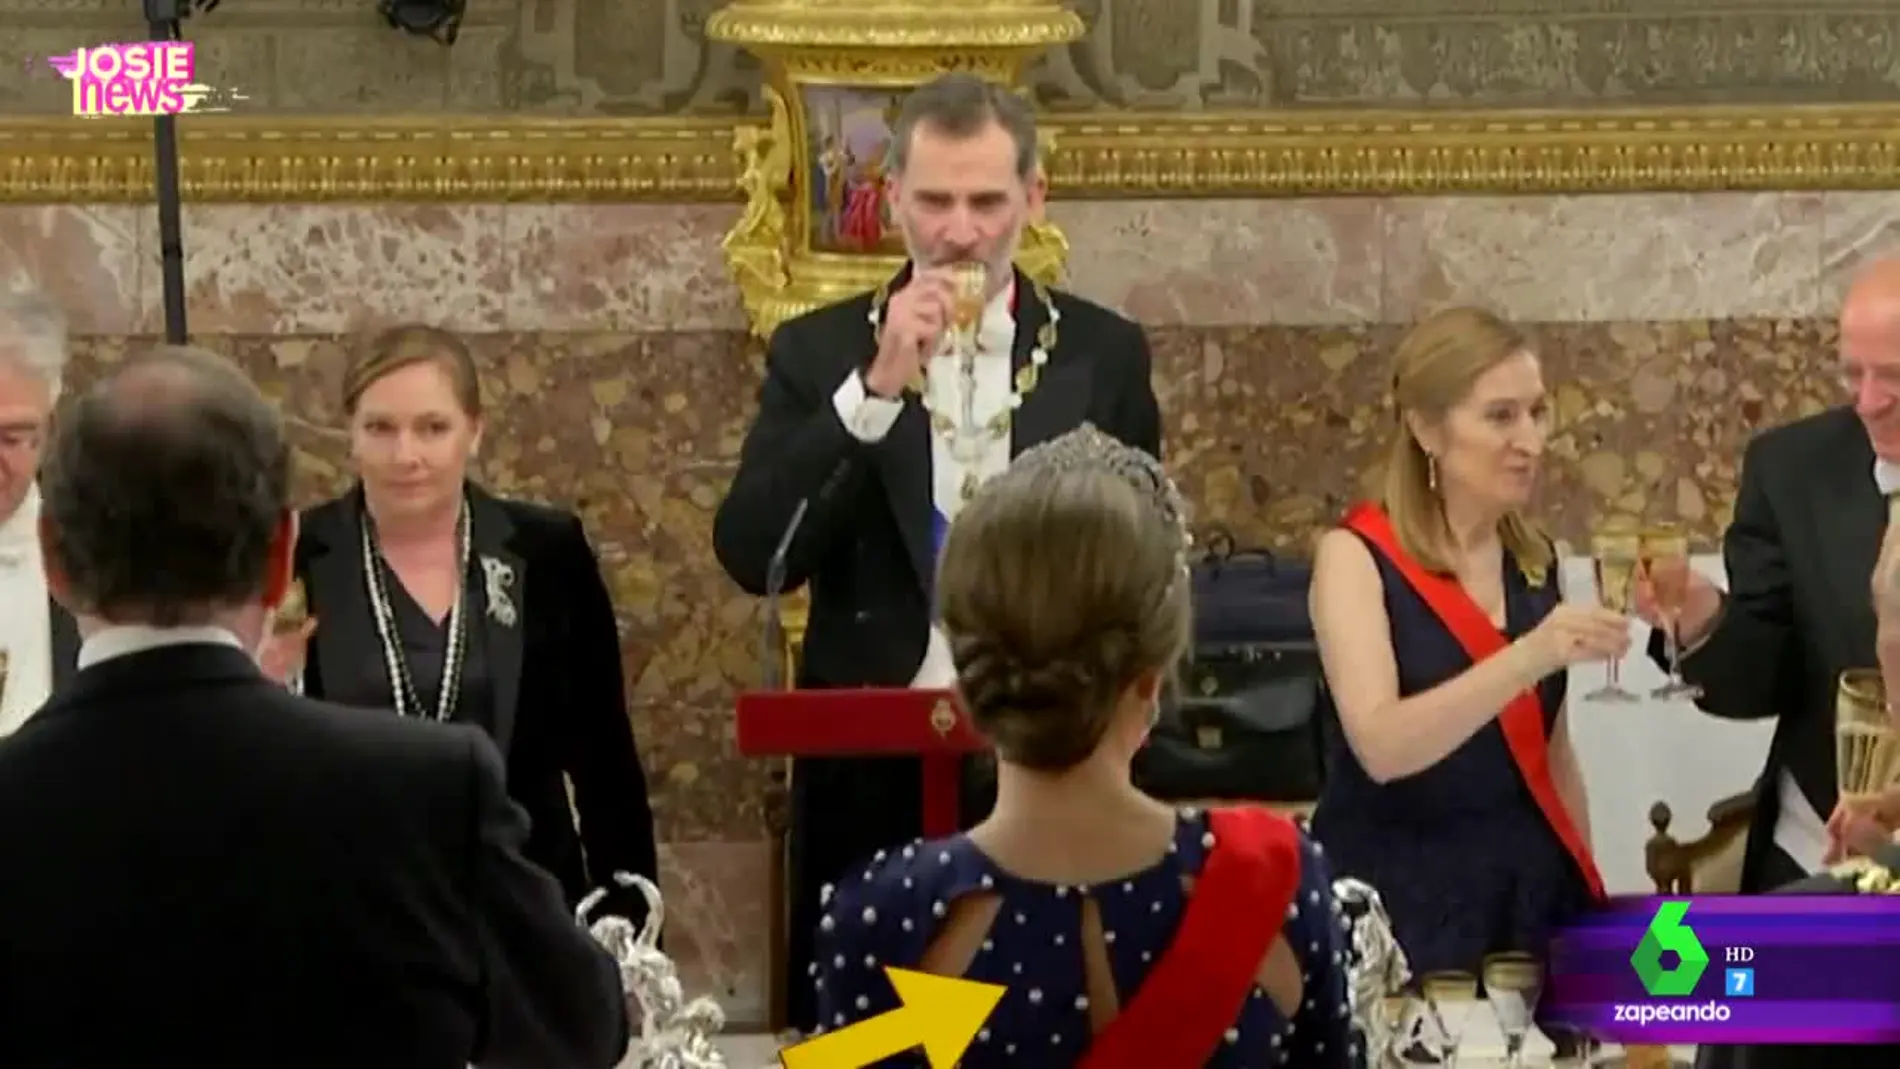 Las imágenes del incidente de la reina Letizia con su vestido en la cena de gala en el Palacio Real 